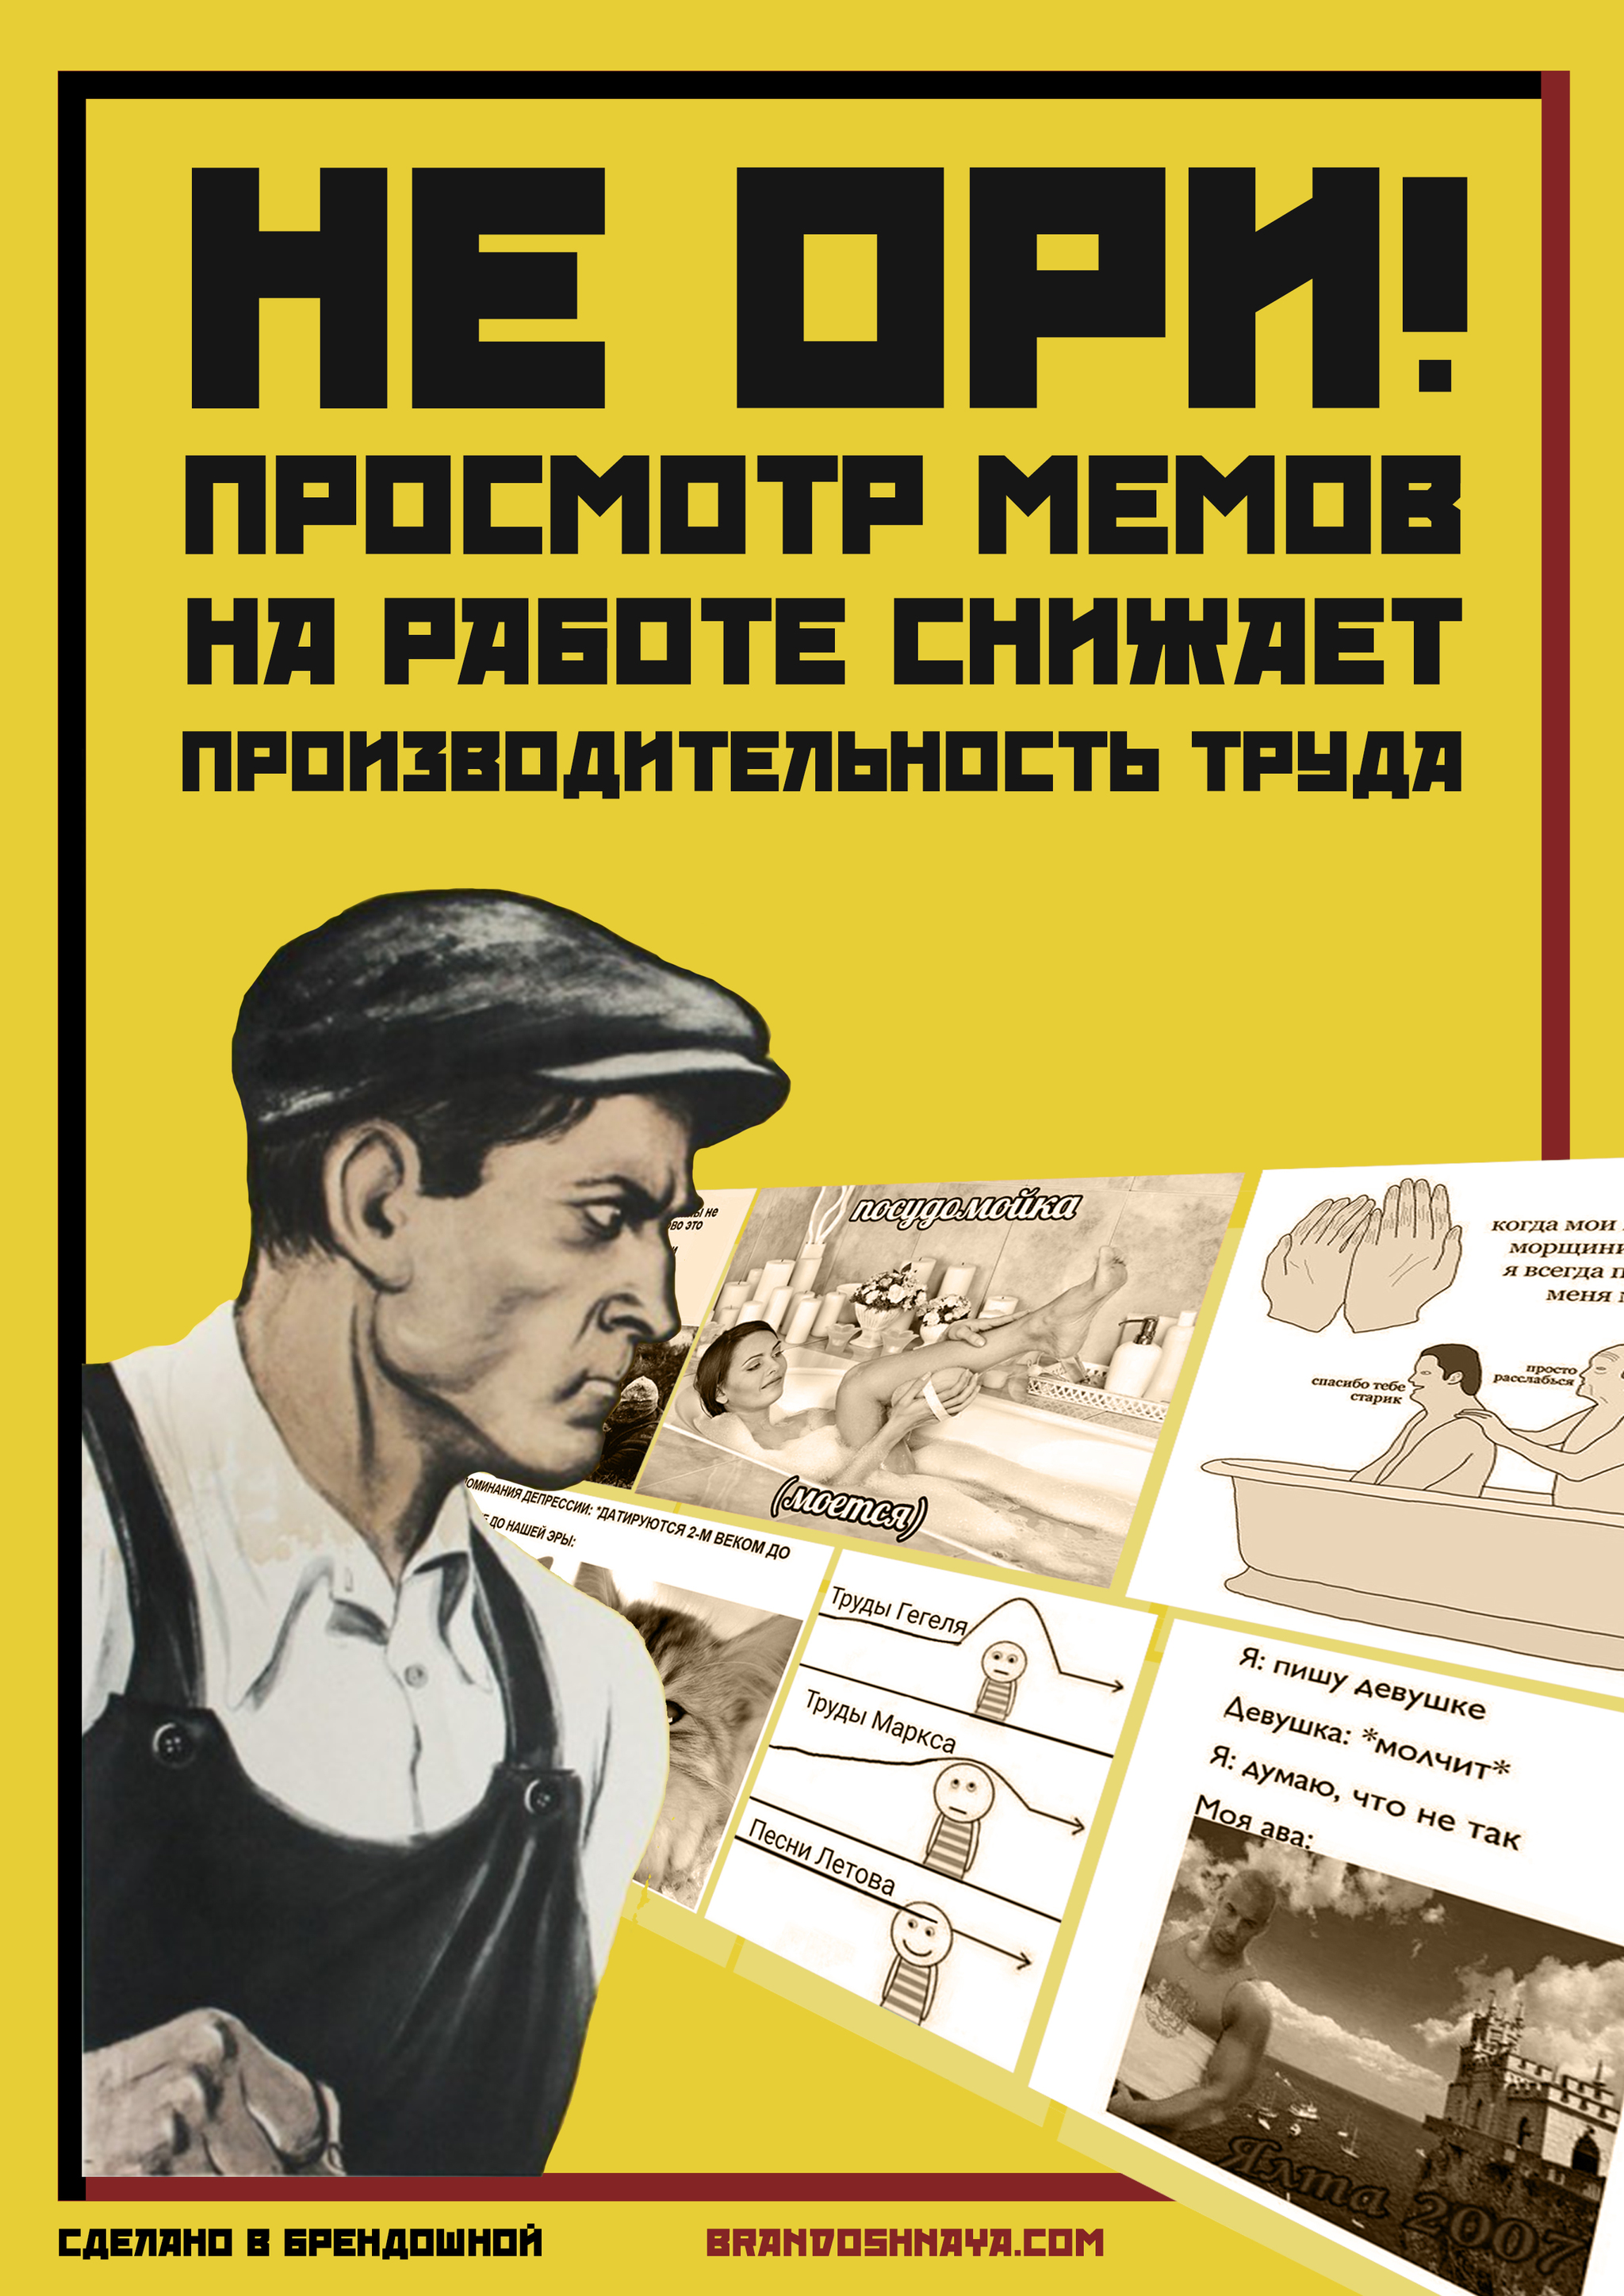 Сделать агитацию. Агитационные плакаты. Агитационный плакат современный. Советские производственные плакаты. Плакаты с юмором.